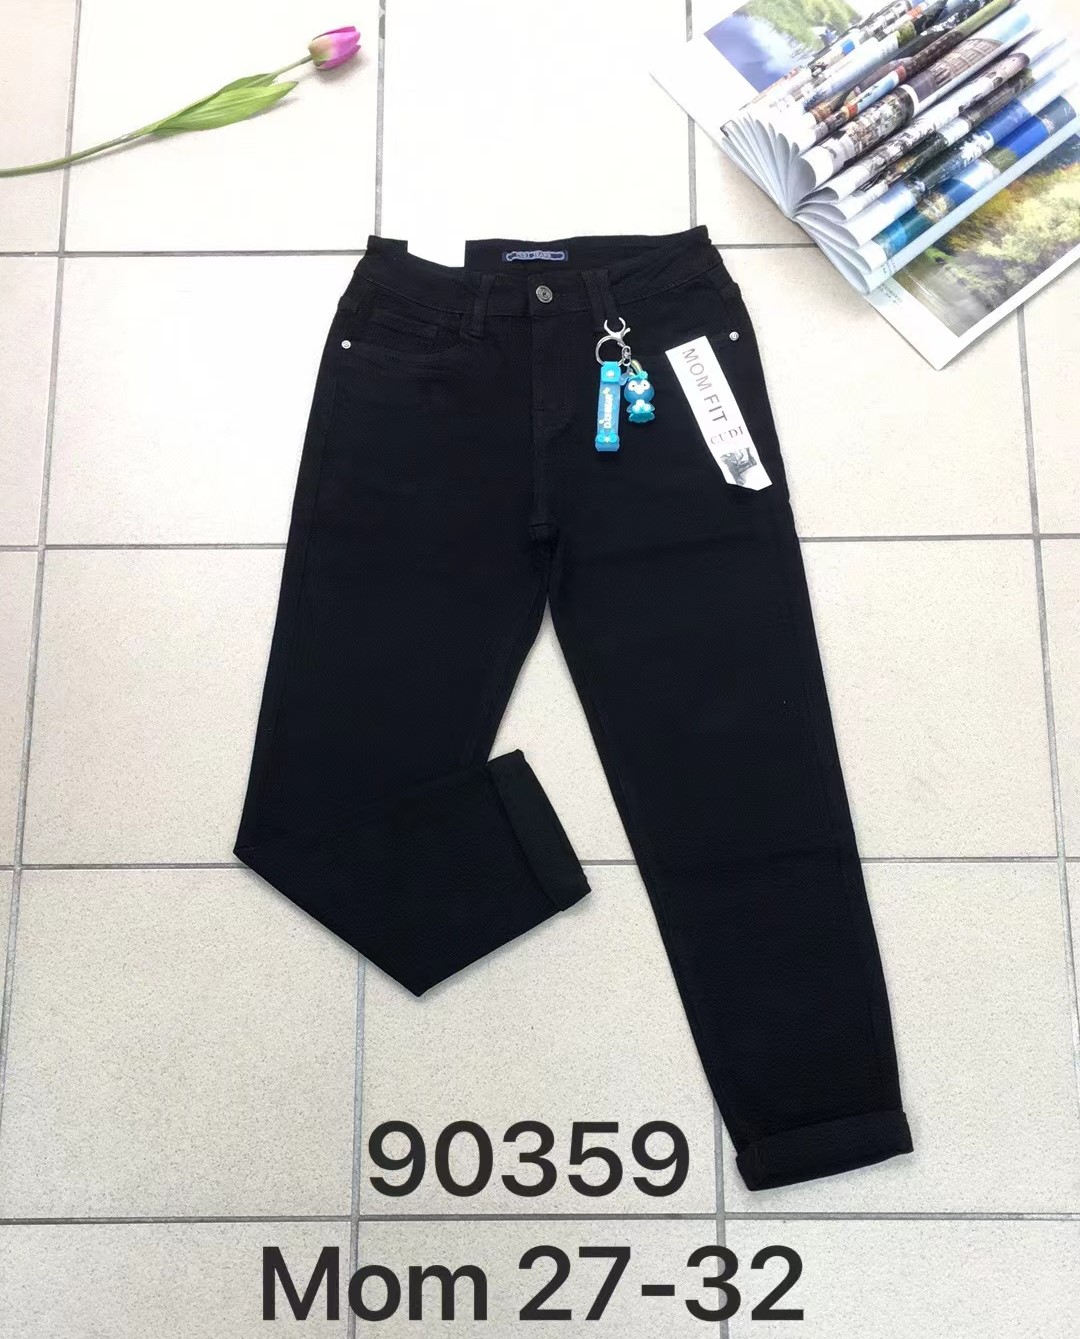 Spodnie damskie jeans Roz  27-32 .  1 kolor . Paczka 10szt